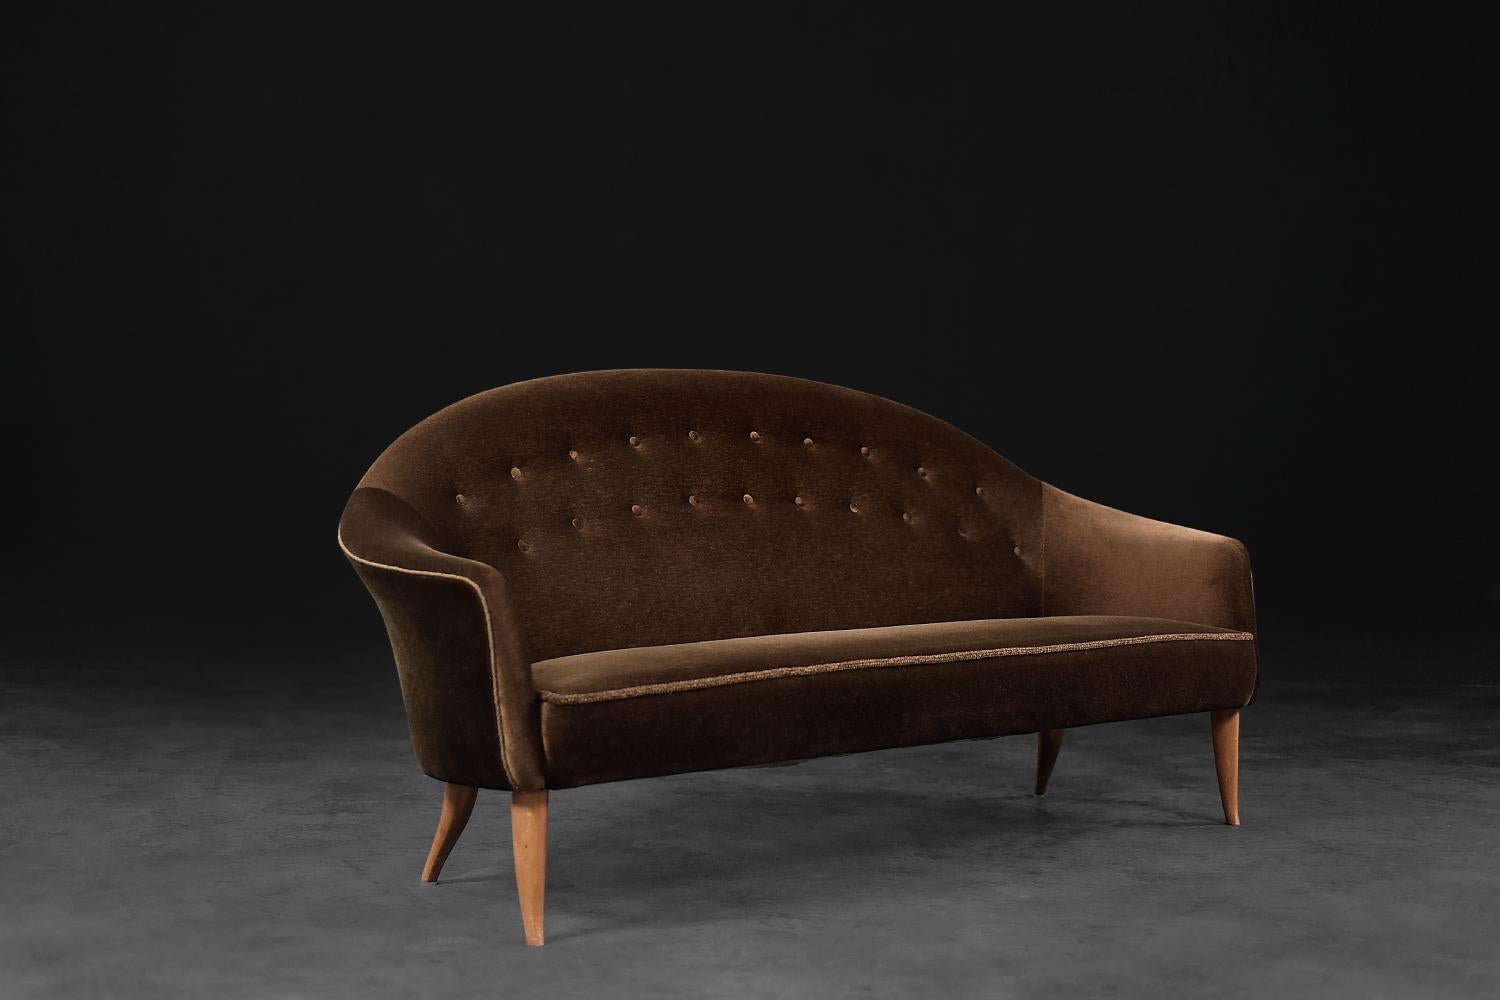 Dieses Paradiset-Sofa aus der Collection'S Triva wurde 1958 von Kerstin Hörlin-Holmqvist entworfen und von Nordiska Kompaniet (NK) in Schweden hergestellt. Die charakteristischen Hörlin-Holmqvist-Beine sind aus Buchenholz gefertigt. Der Sitz ist mit